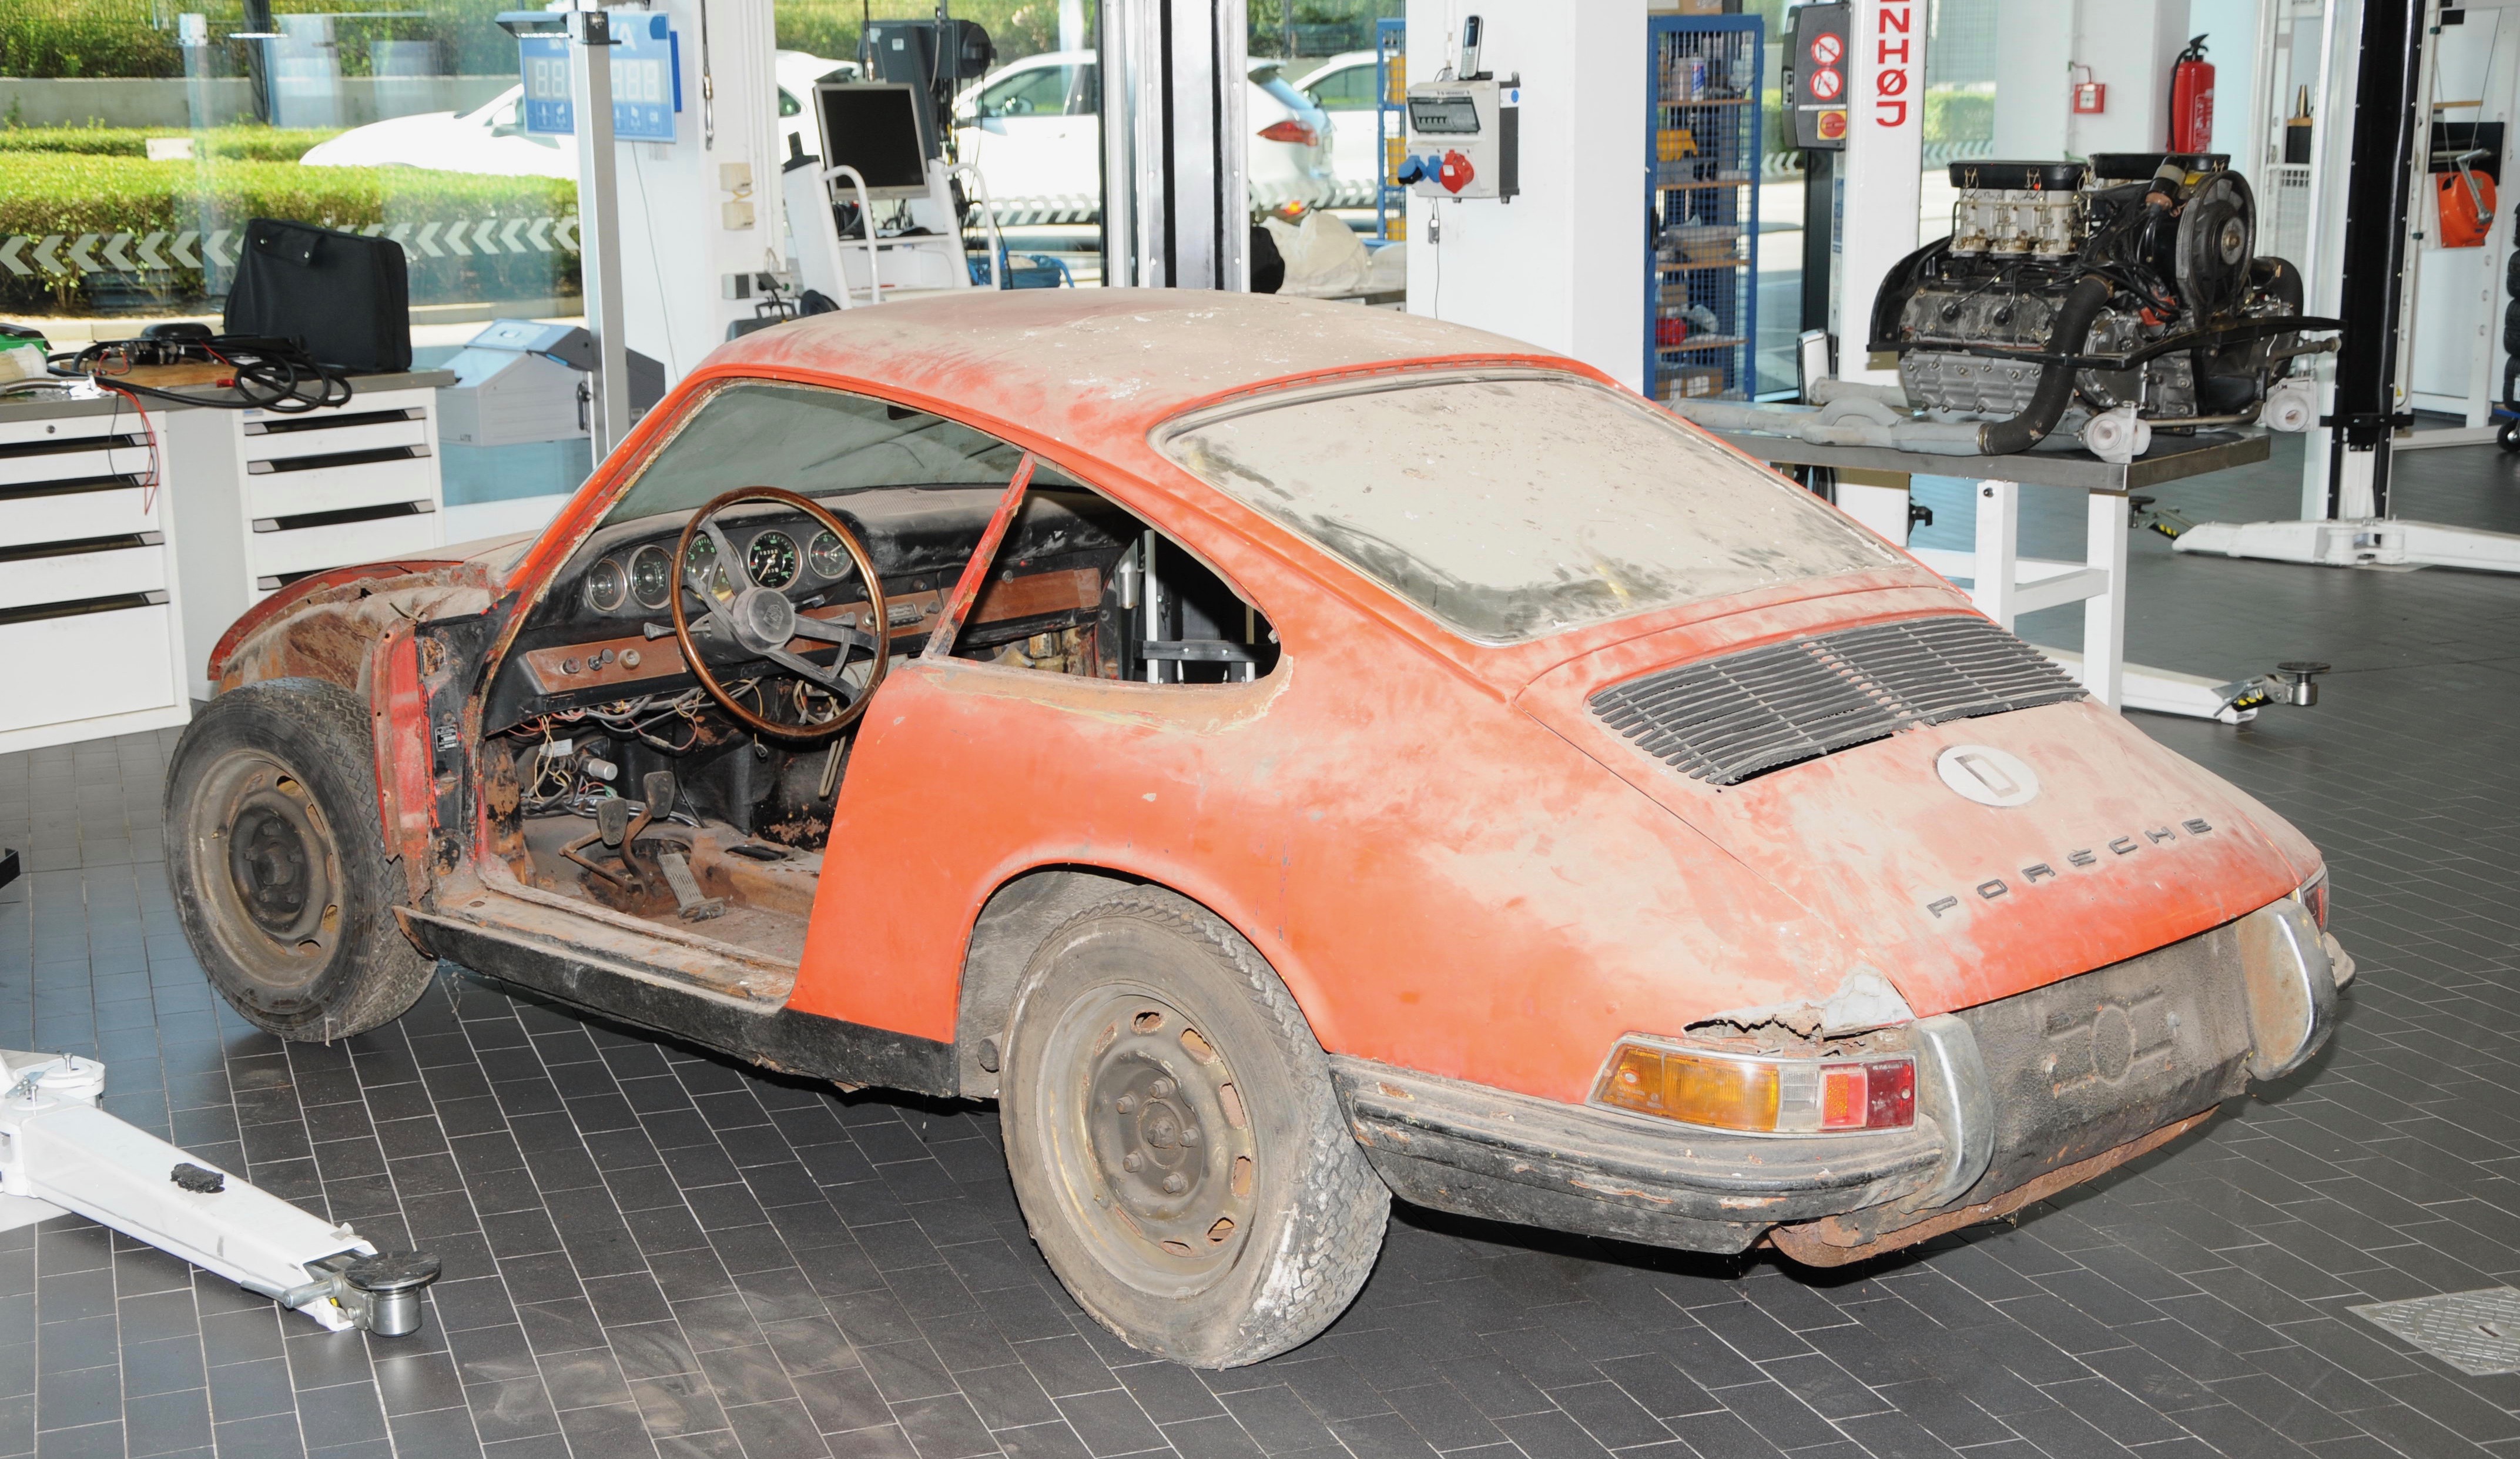 Barn-found oldest 911 restored and showcased in Porsche Museum